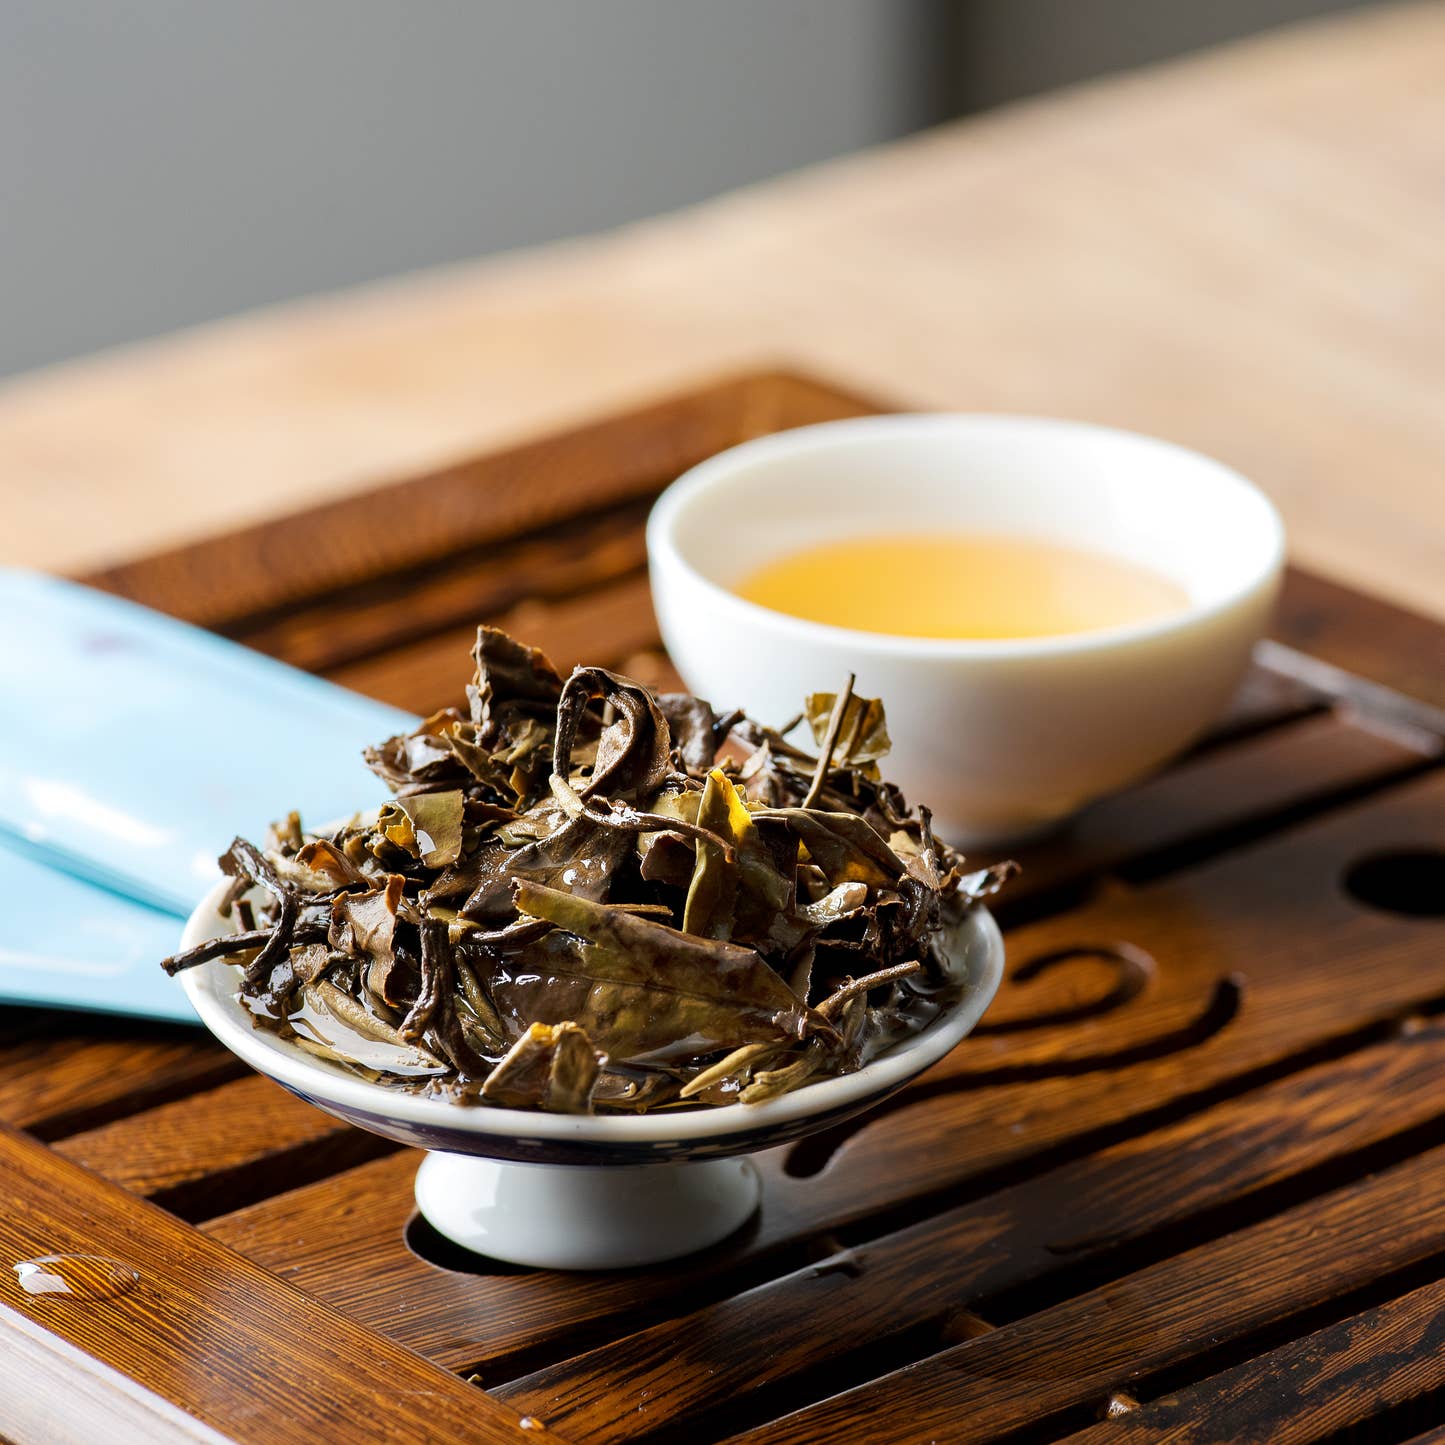 TeaVivre Fuding Shou Mei White Tea Mini Cake steeped tea leaves